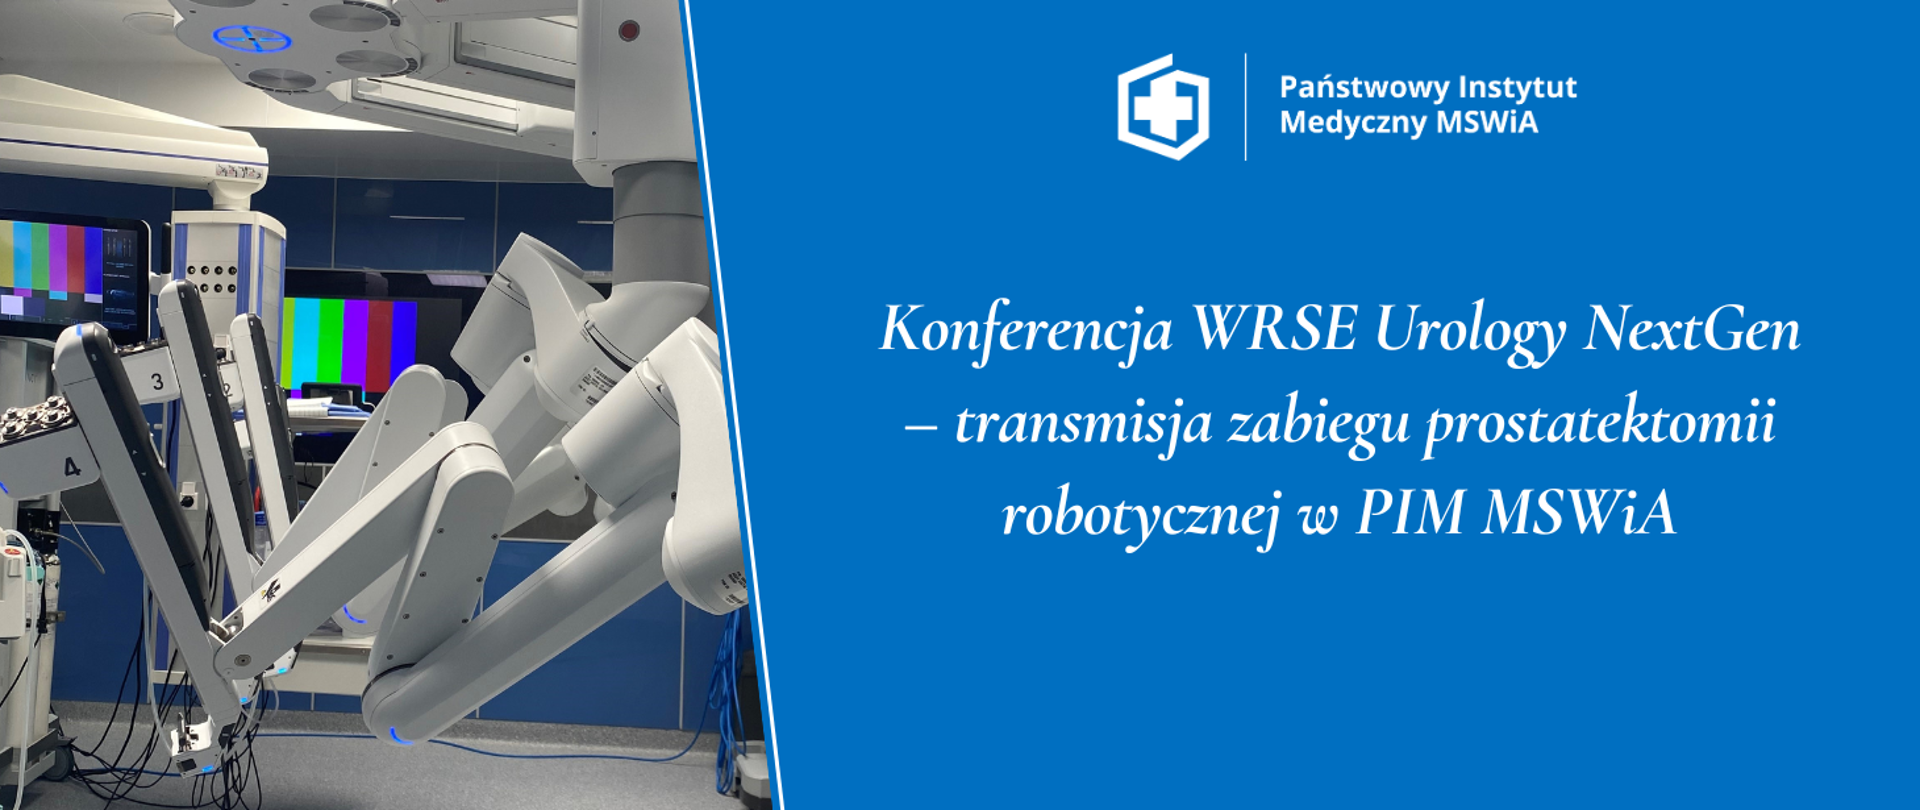 Konferencja WRSE Urology NextGen – transmisja zabiegu prostatektomii robotycznej w PIM MSWiA